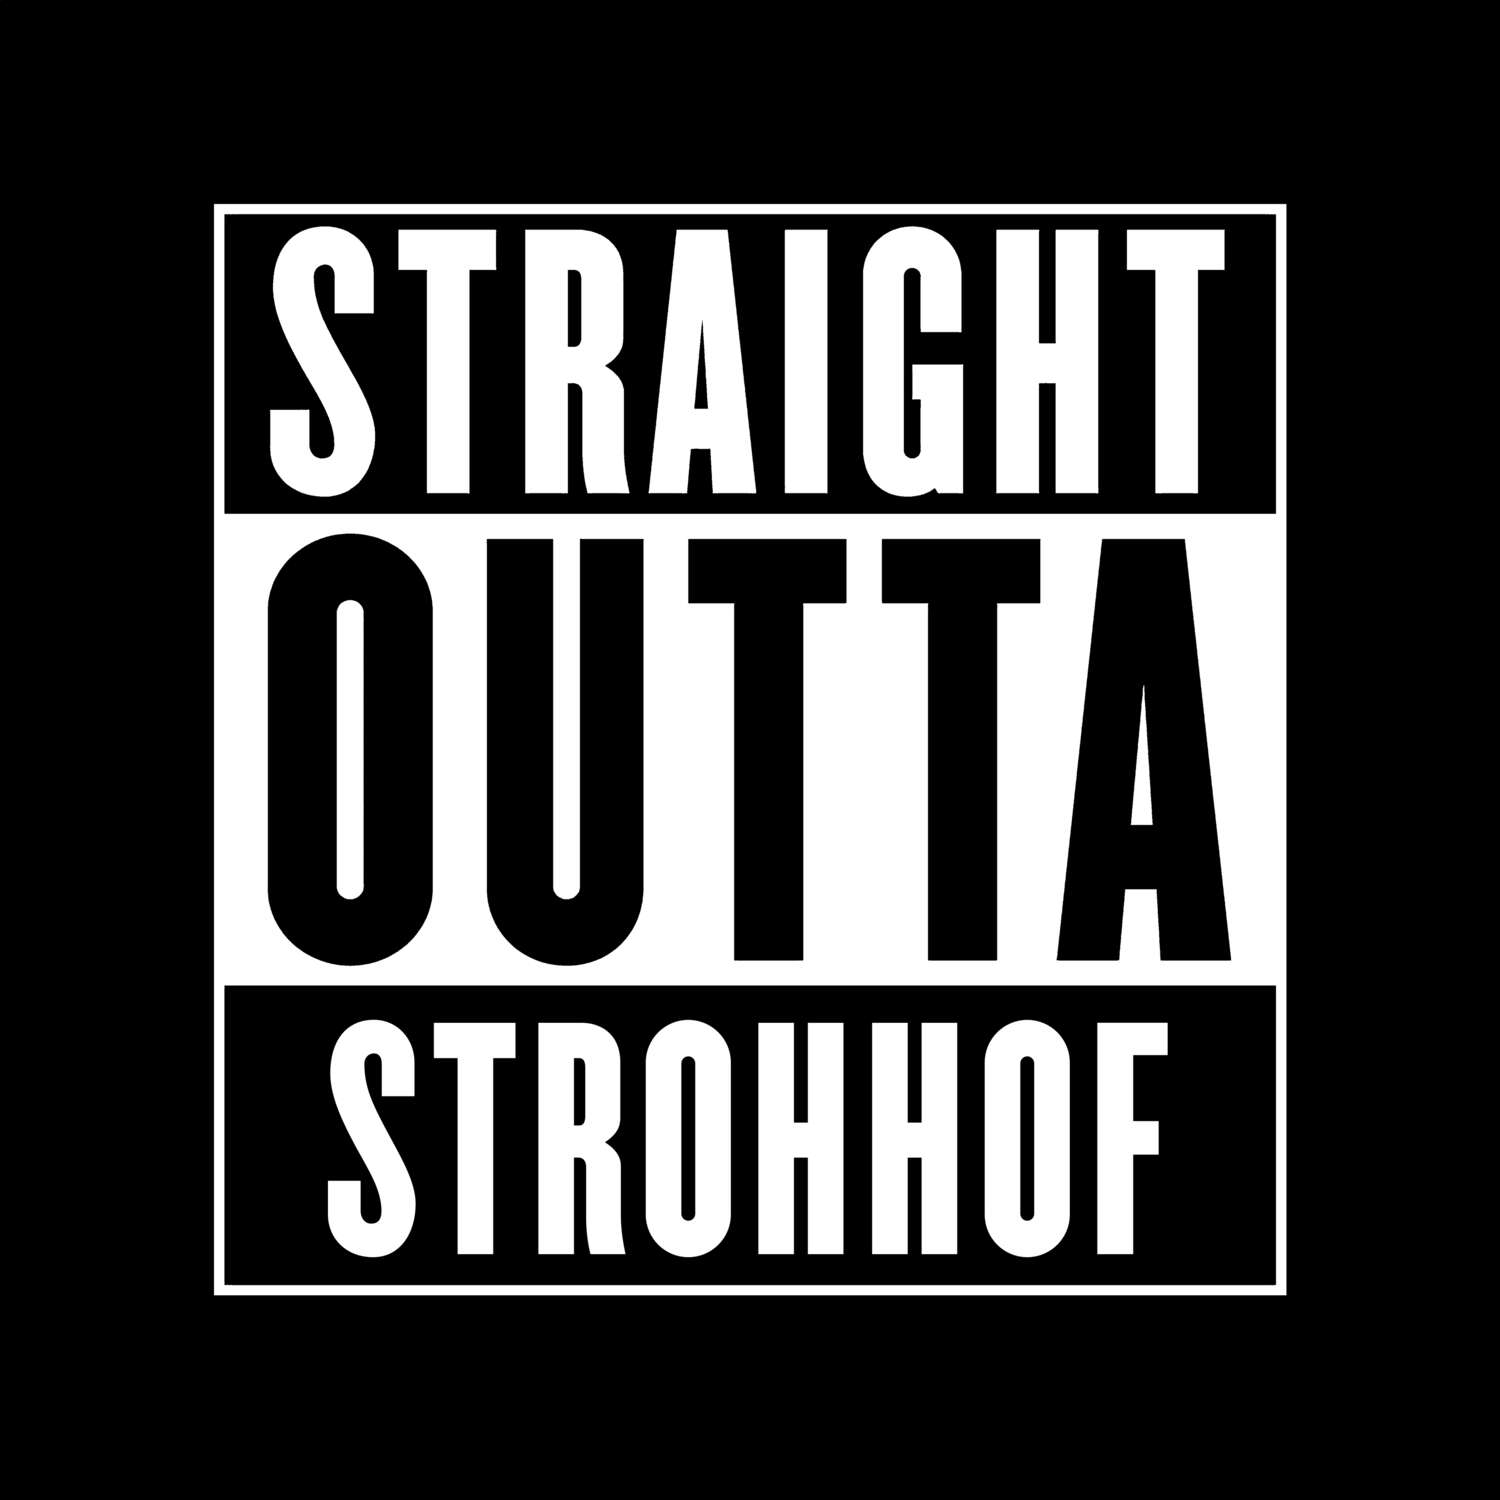 Strohhof T-Shirt »Straight Outta«